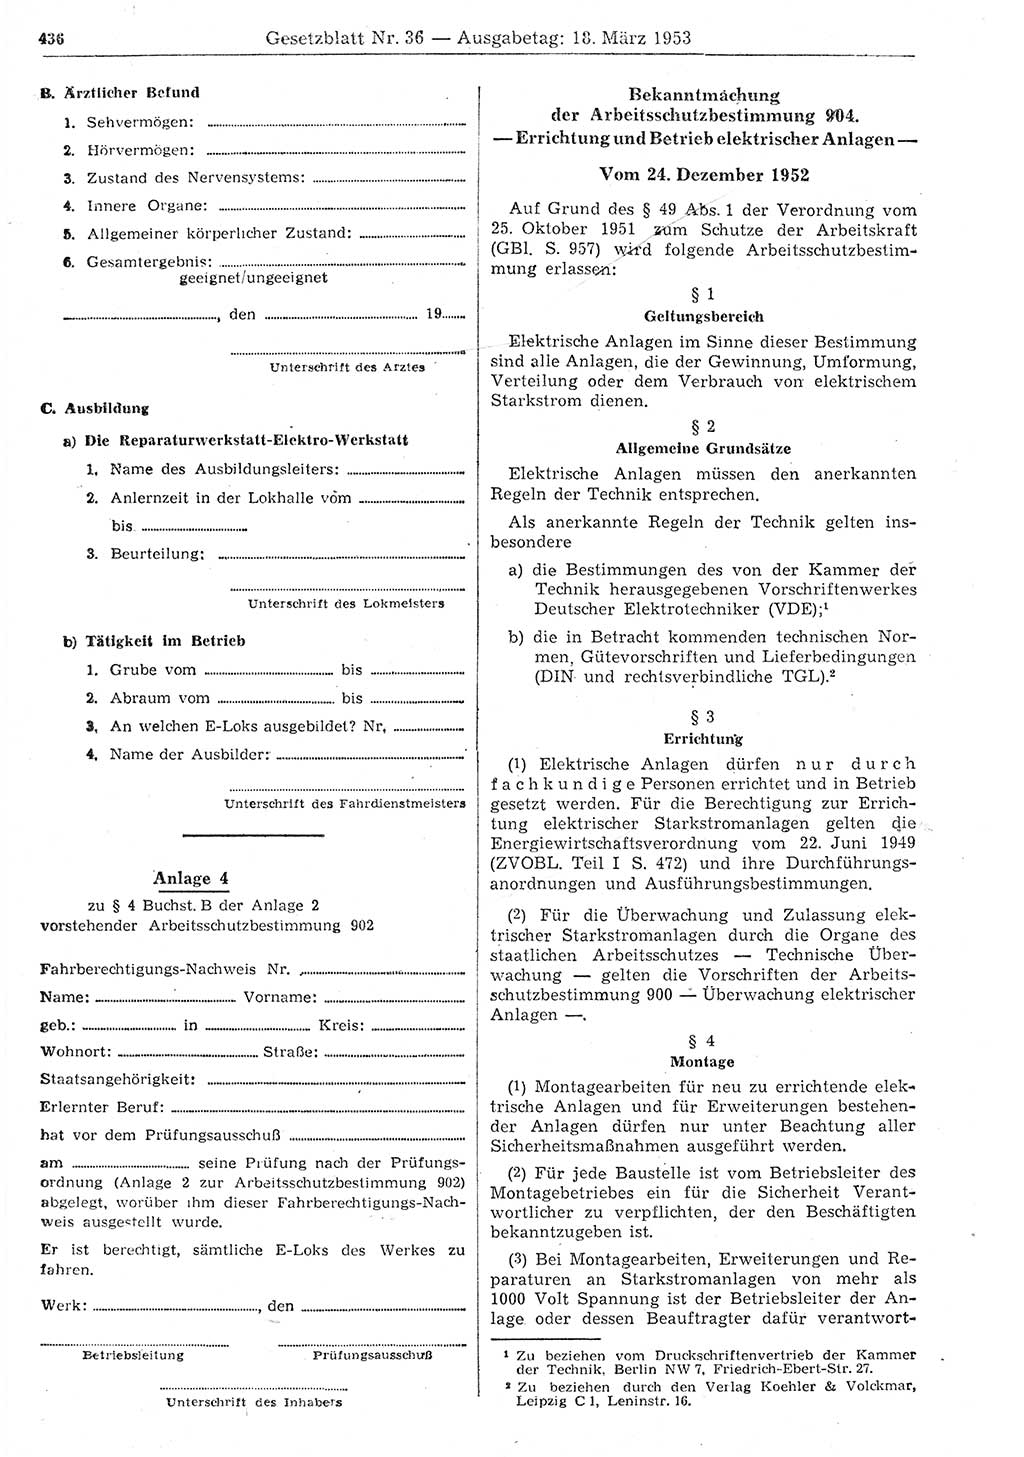 Gesetzblatt (GBl.) der Deutschen Demokratischen Republik (DDR) 1953, Seite 436 (GBl. DDR 1953, S. 436)